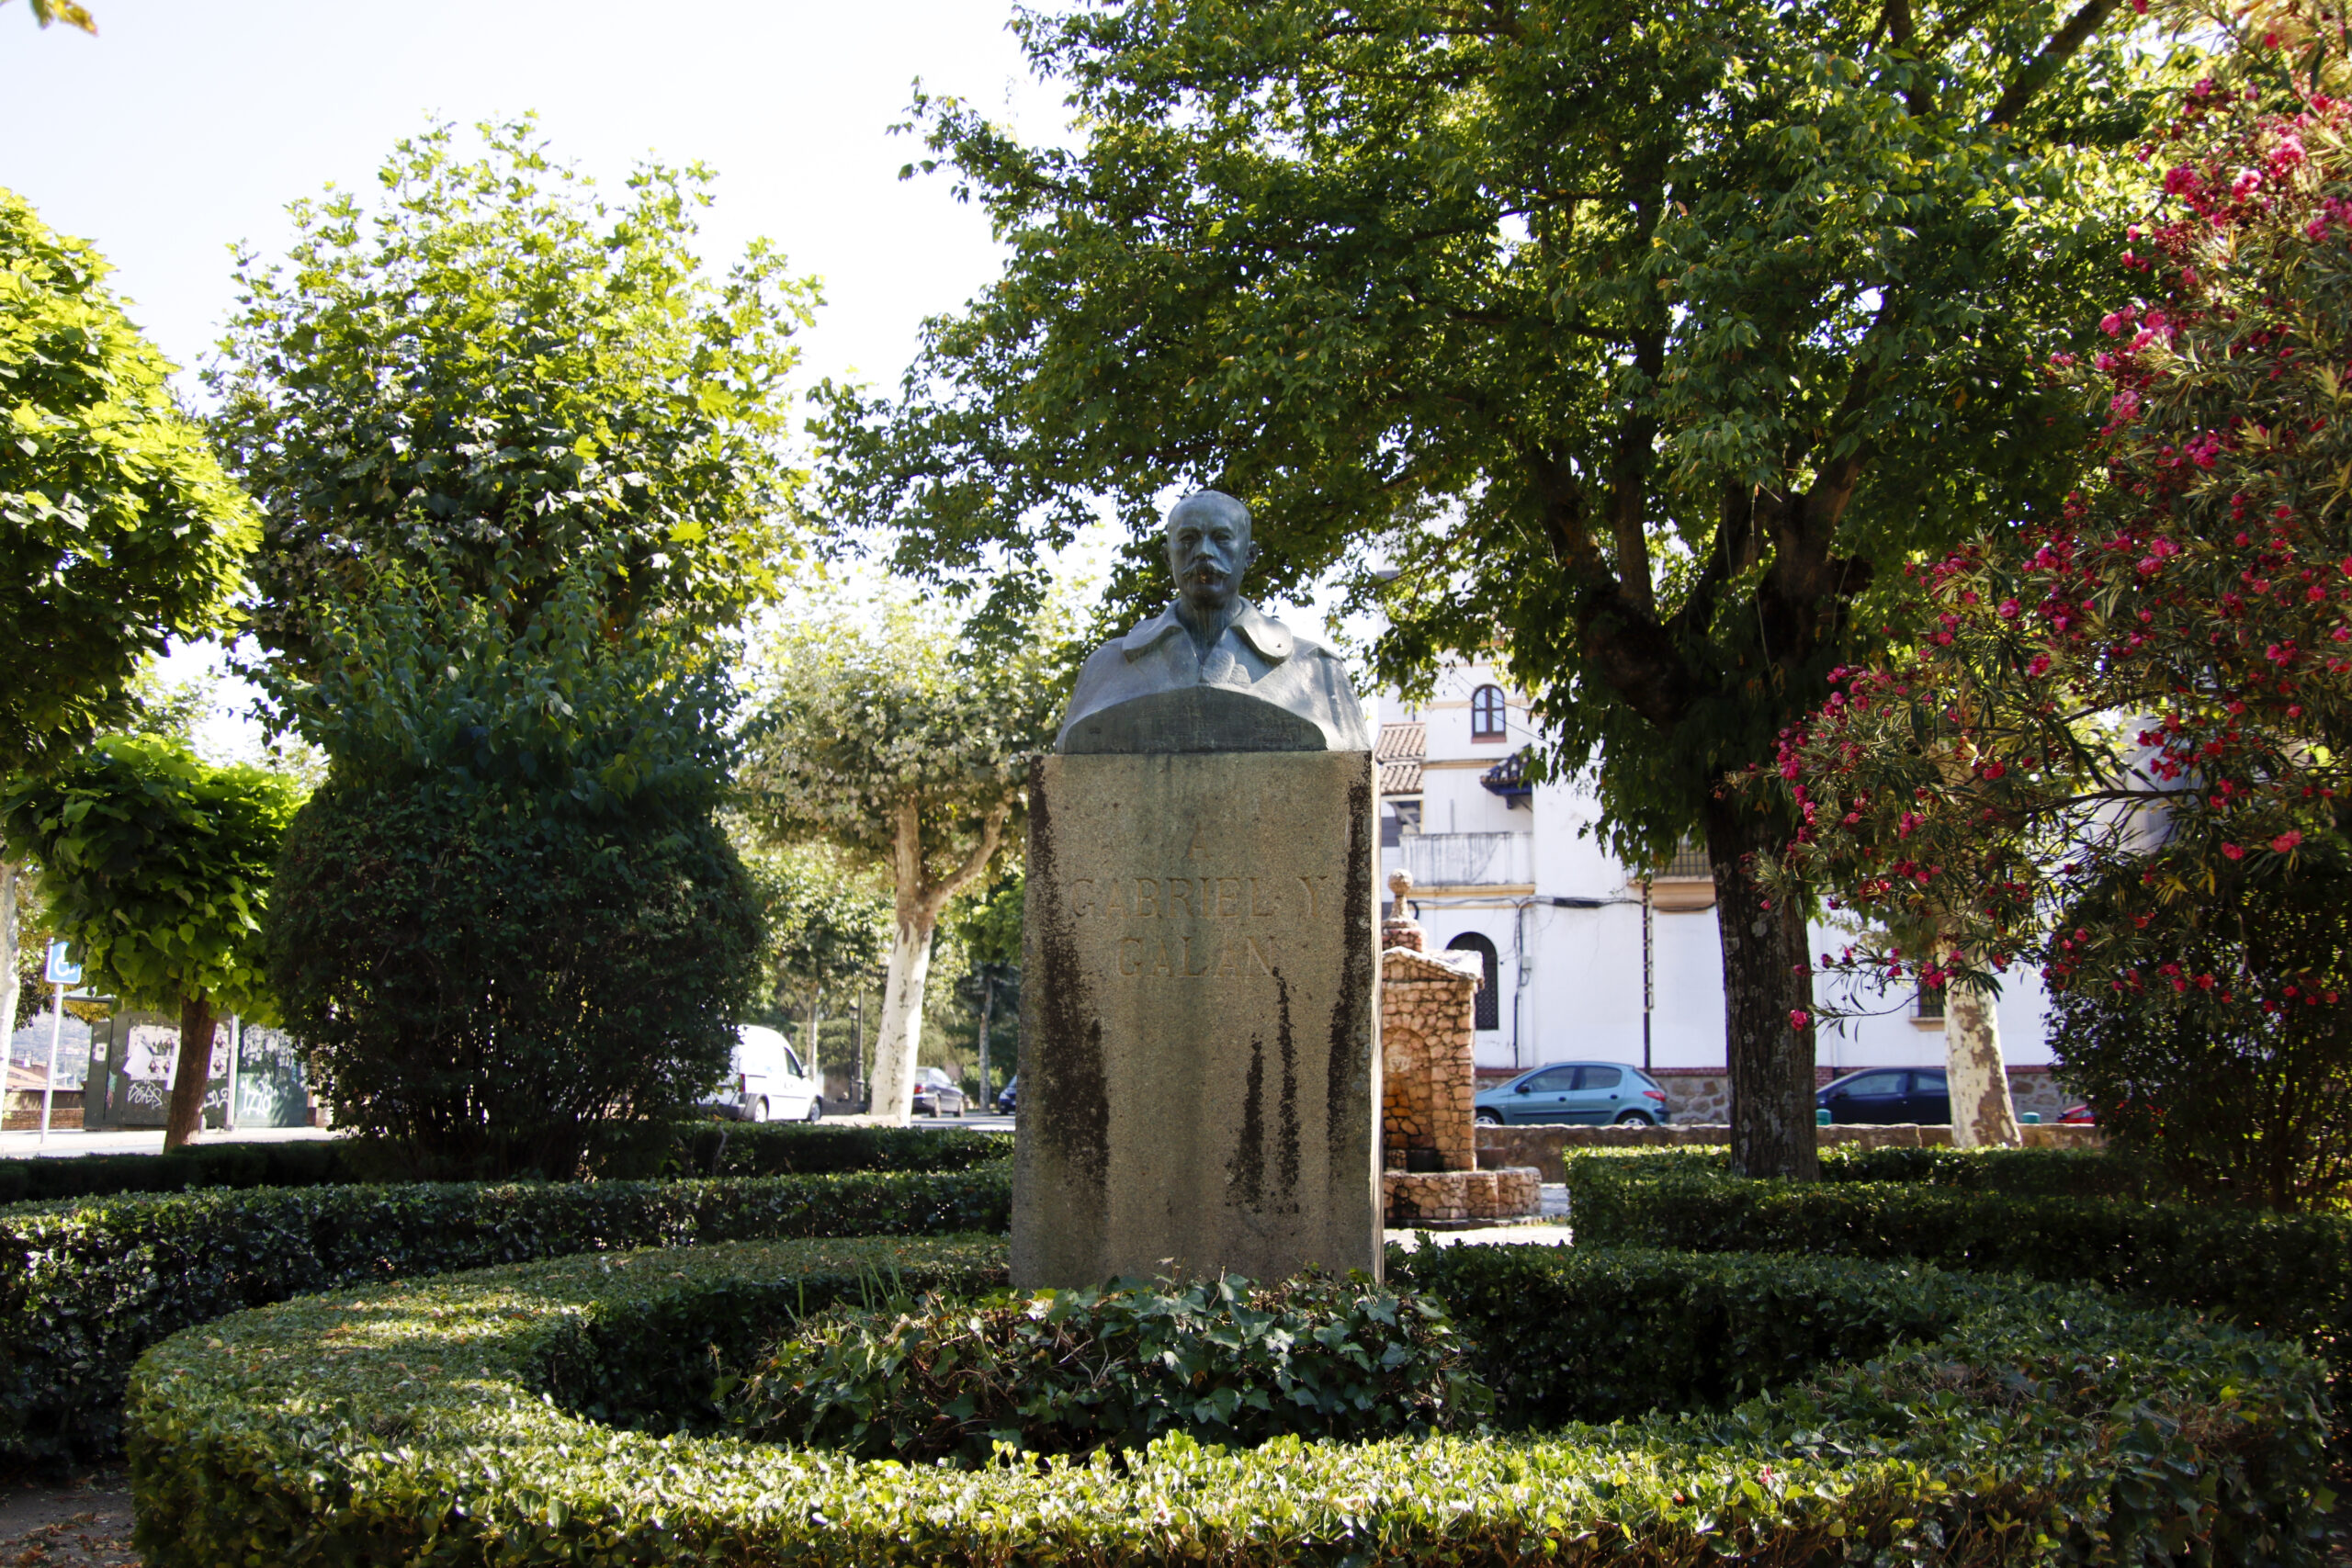 Foto de la escultura a Gabriel y Galán en el Parque de San Antón